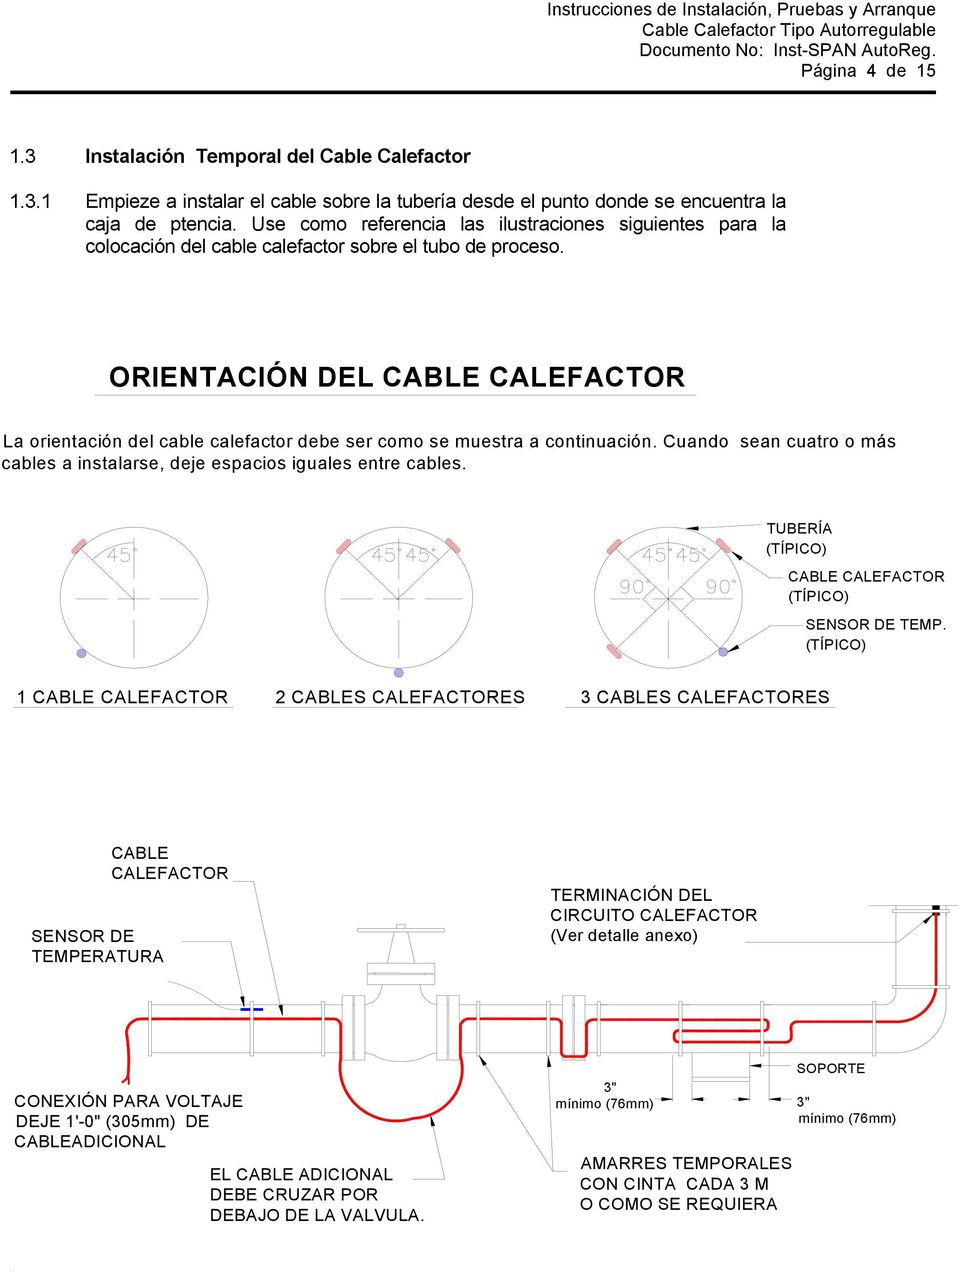 ORIENTACIÓN DEL La orientación del cable calefactor debe ser como se muestra a continuación. Cuando sean cuatro o más cables a instalarse, deje espacios iguales entre cables.